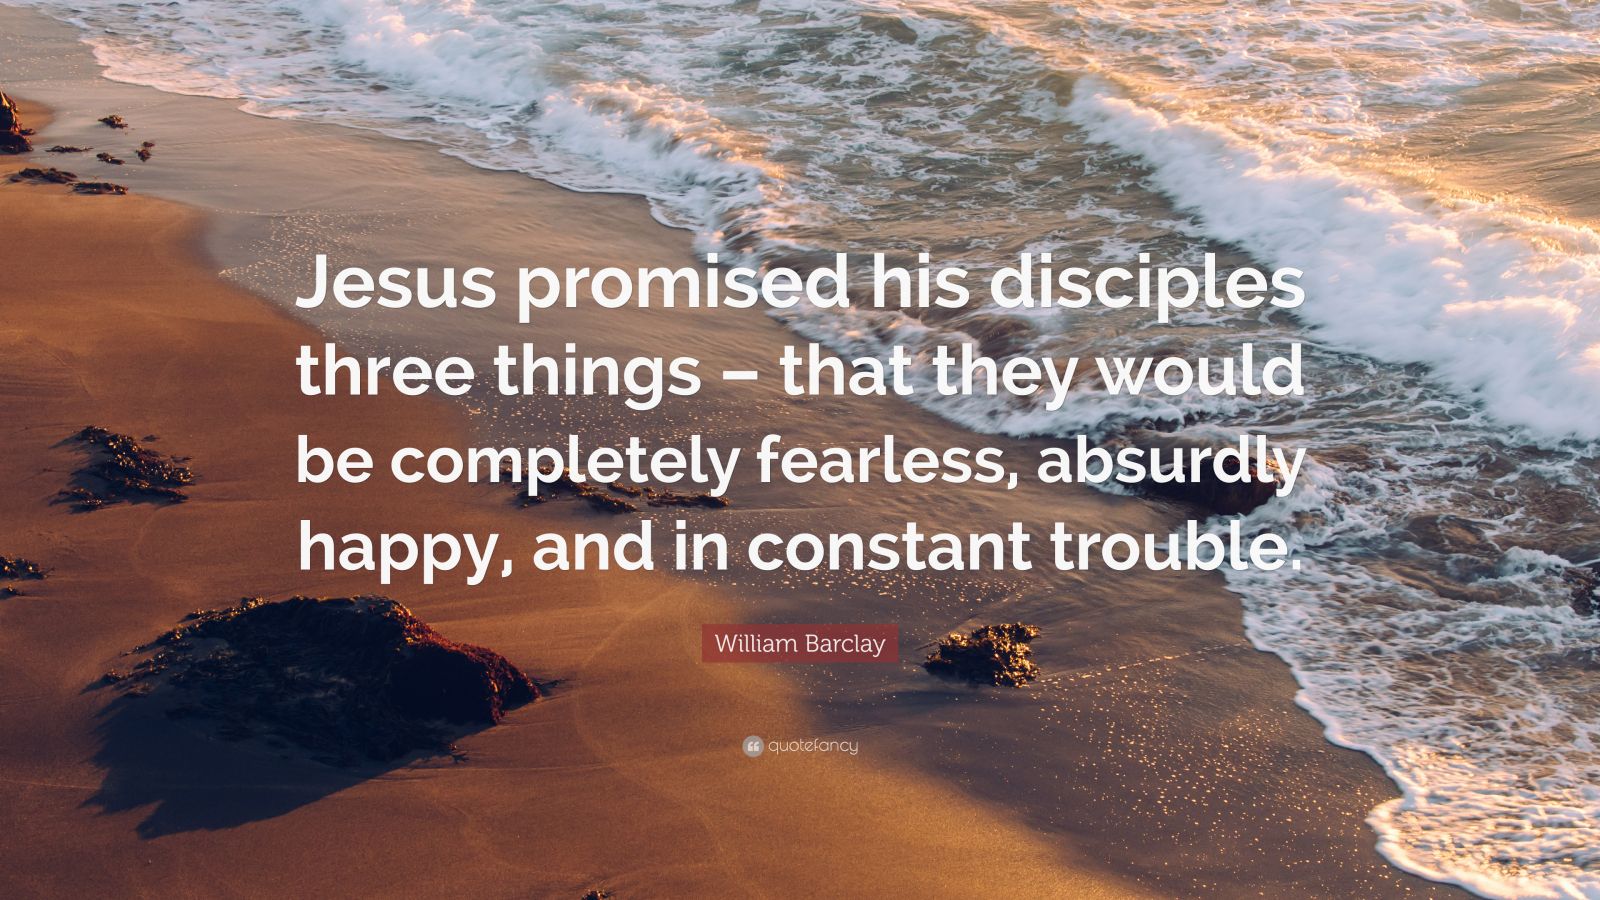 William Barclay Quote: "Jesus promised his disciples three ...